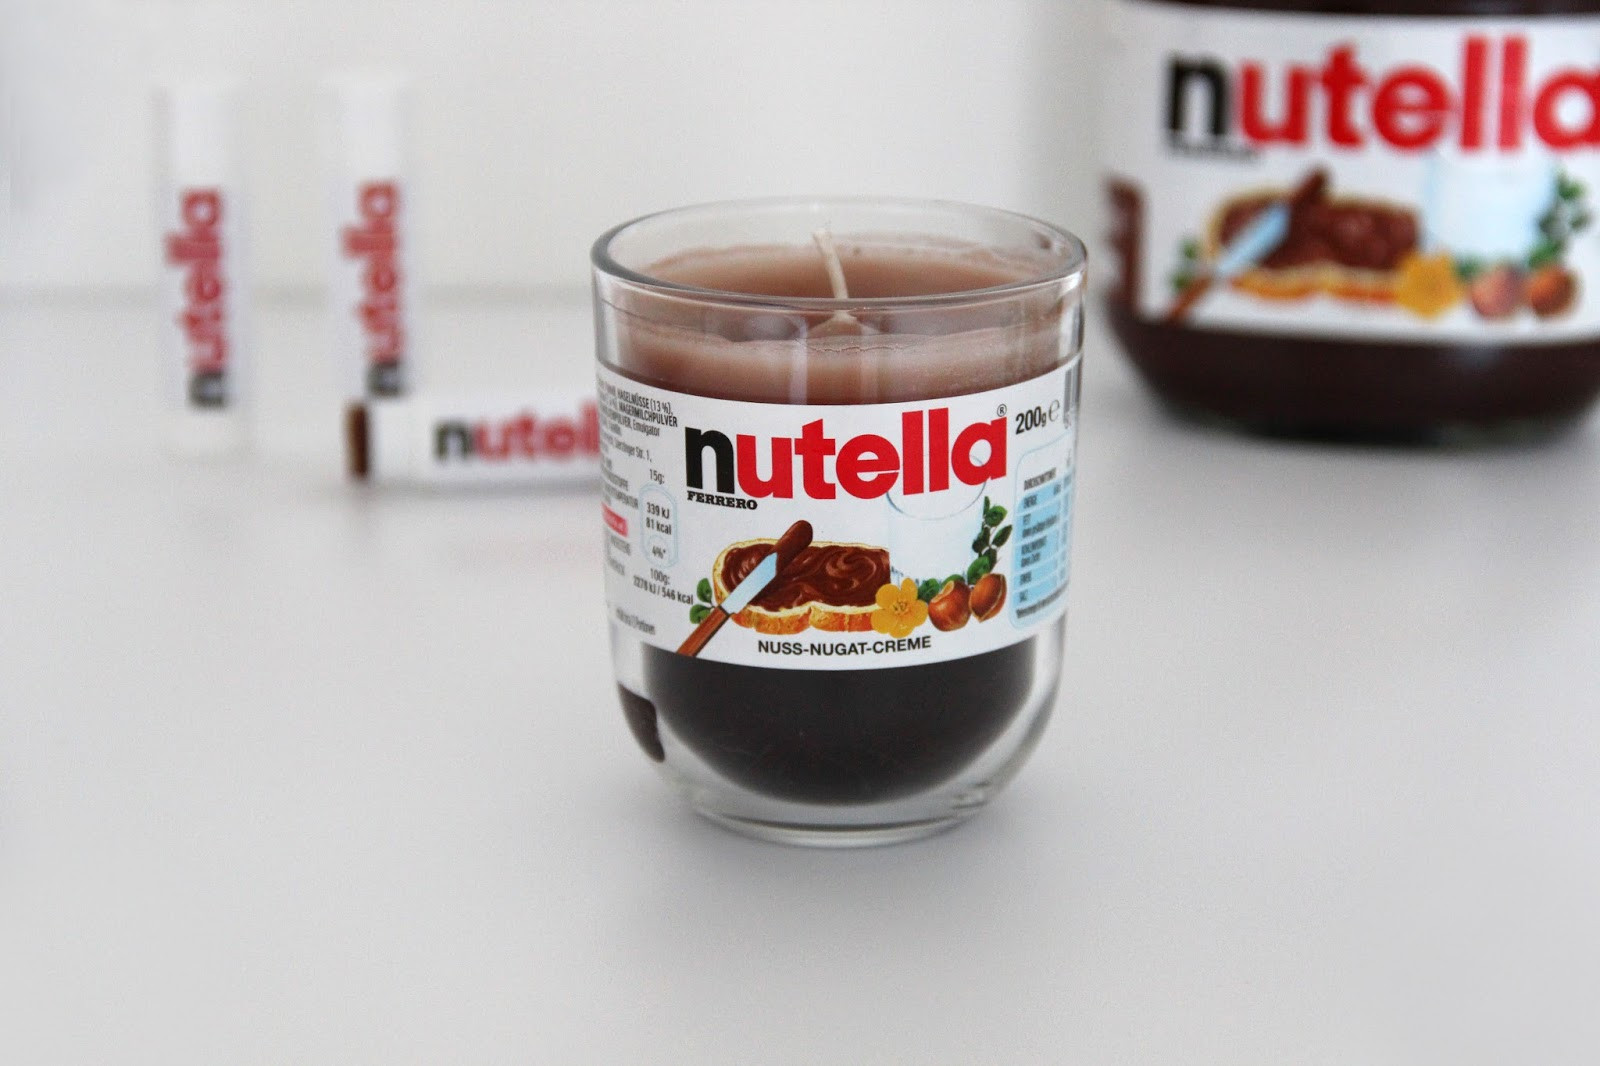 Lustige Nutella Geschenke
 DIY Geschenkideen für Nutella Fans Stilechtes